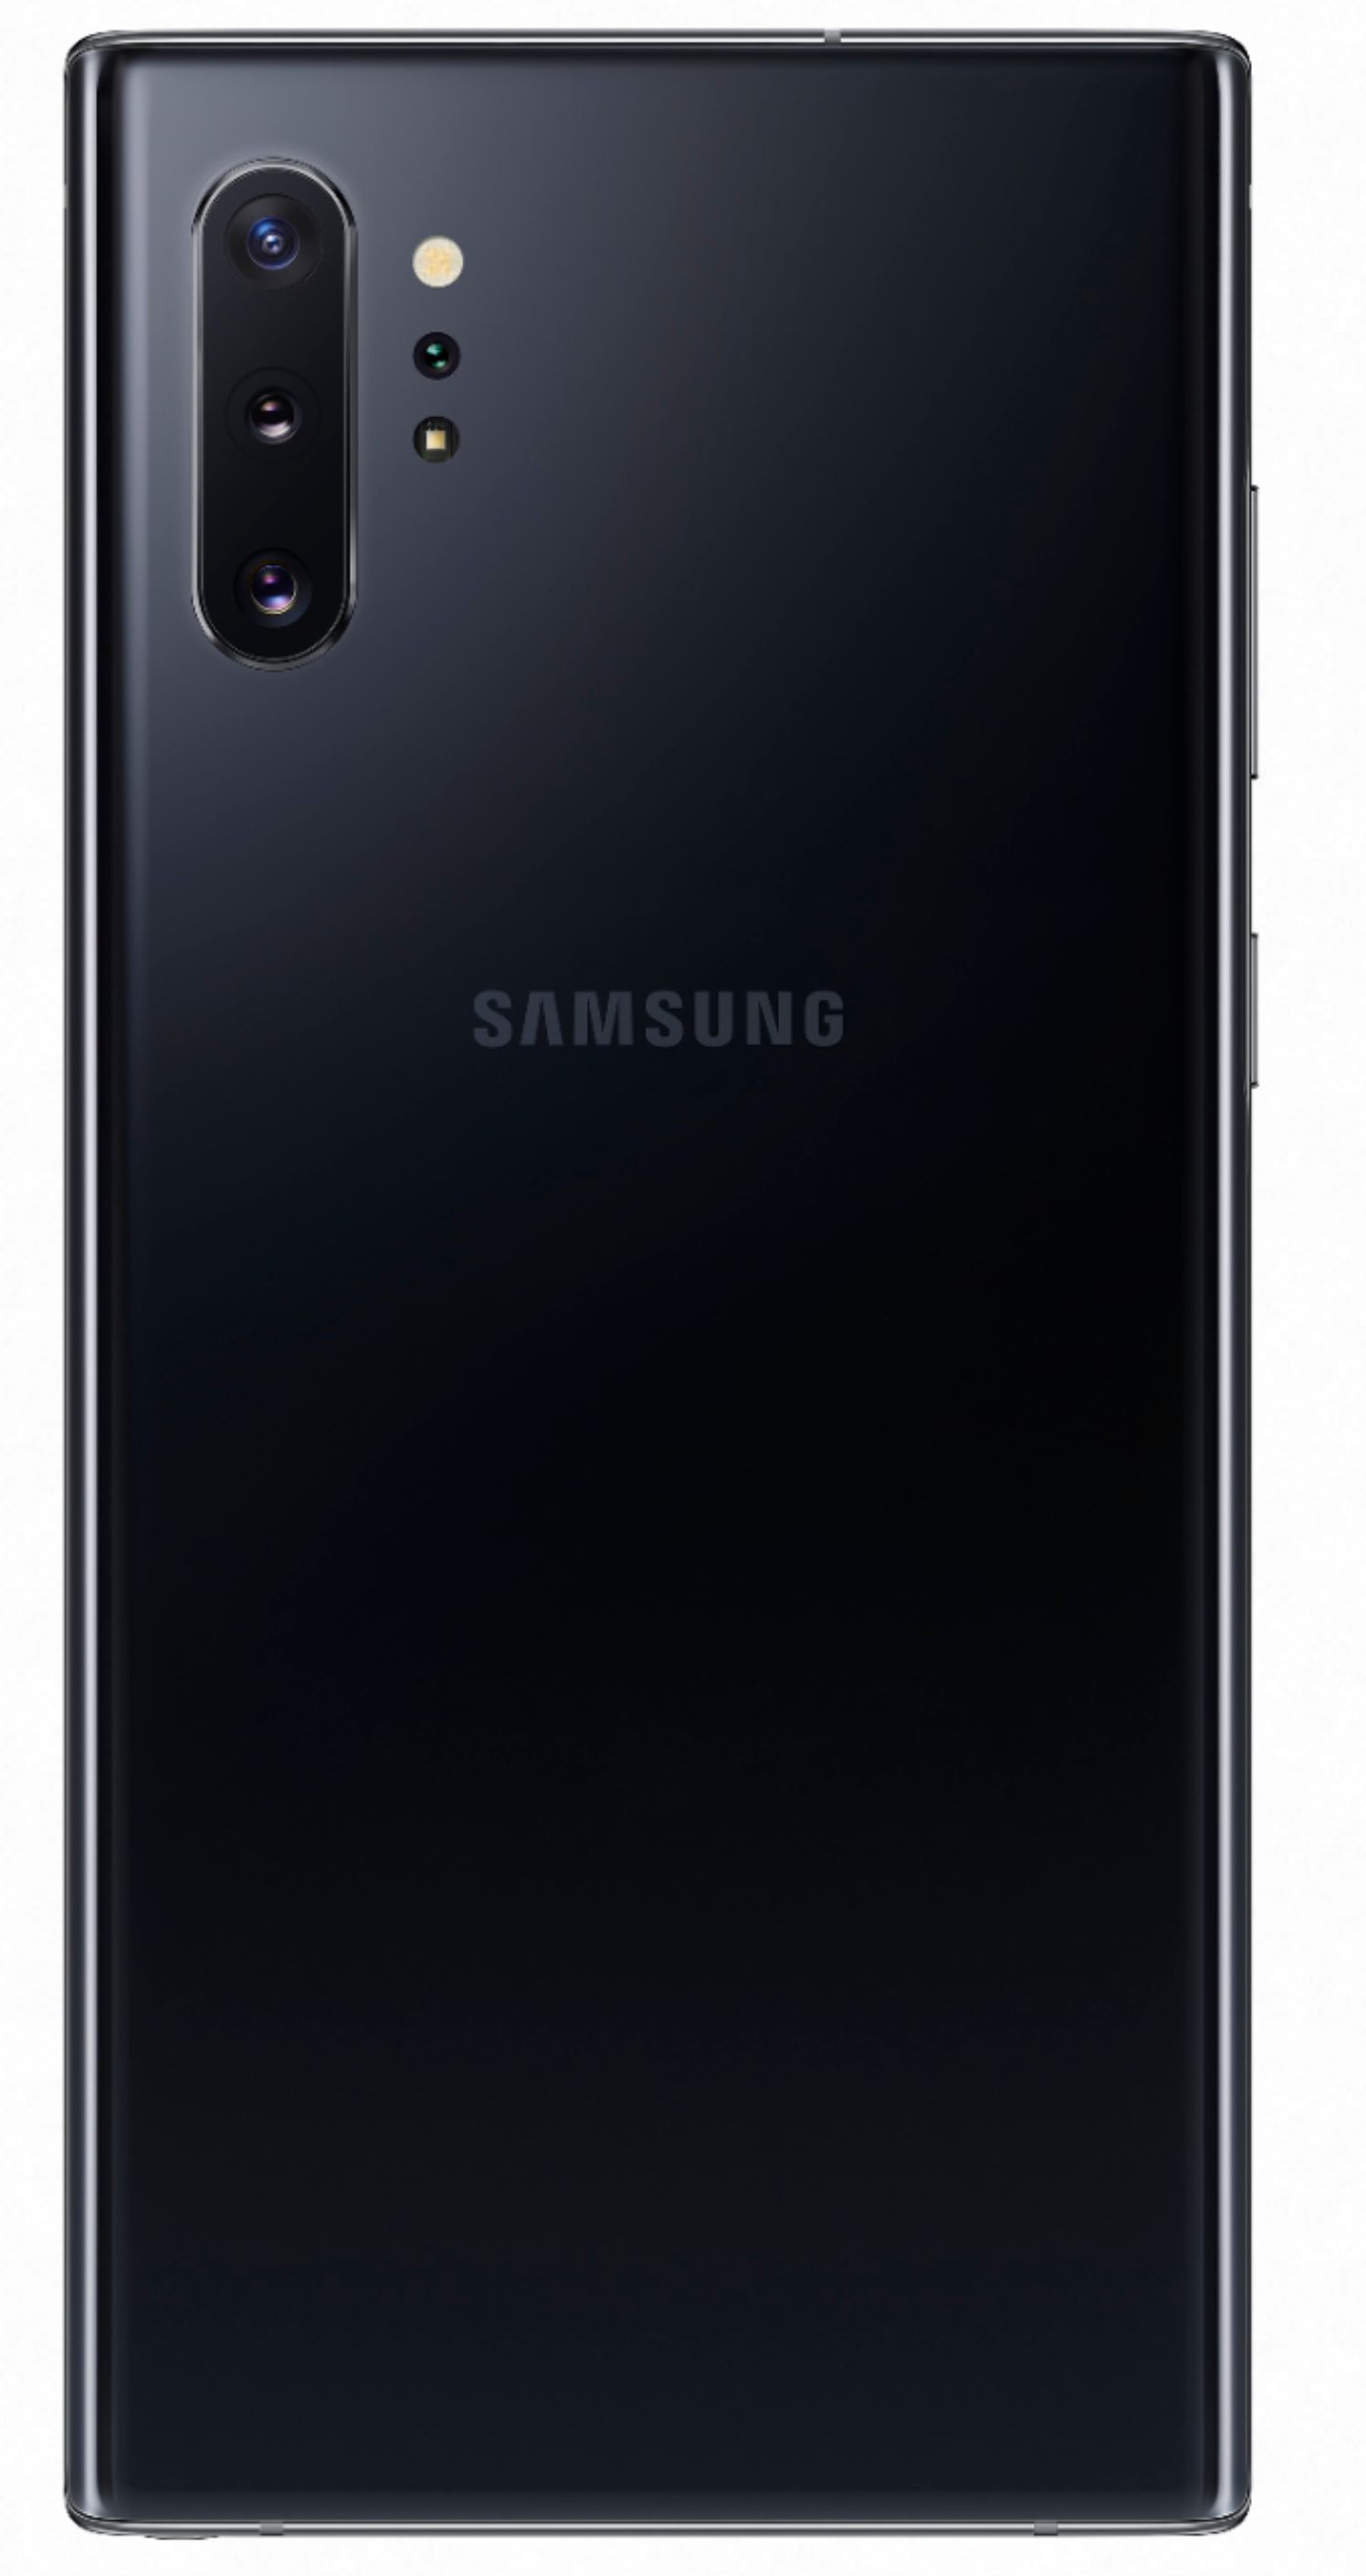 Samsung Galaxy Note 10+, 256gb, Aura Black - Fully Unlocked (Renewed)